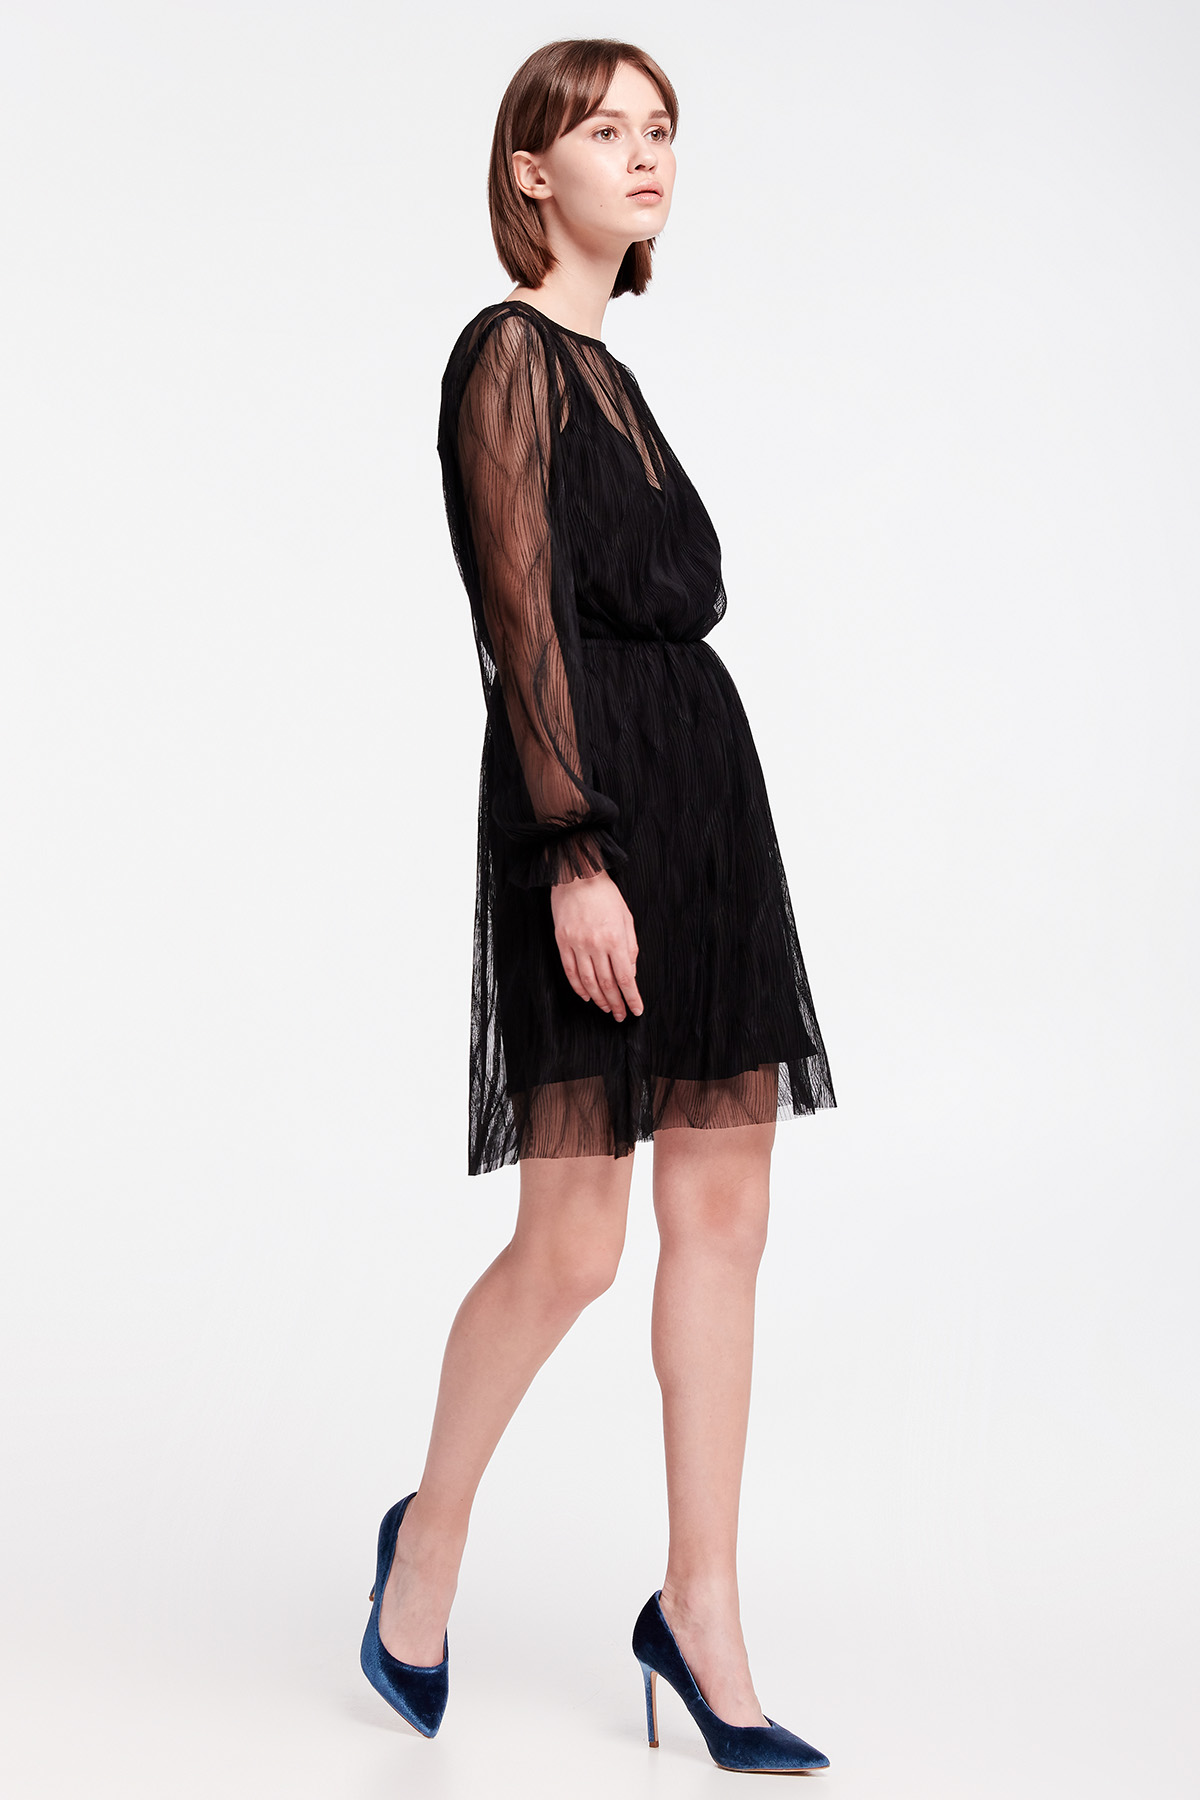 Black lace mini dress, photo 8